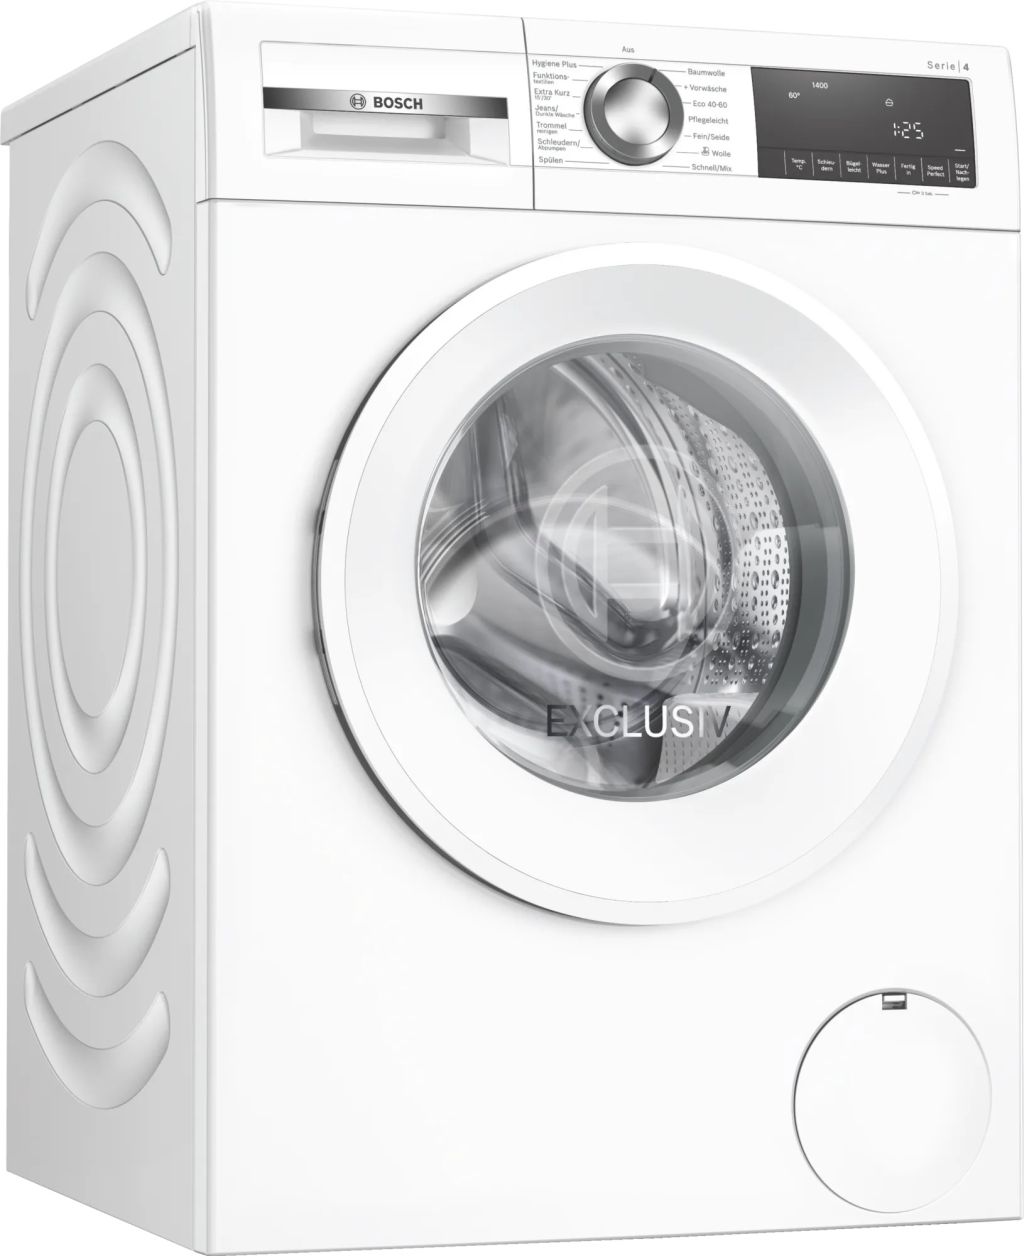 Bosch WGG04408A Waschmaschine Ihre Alles U/min 1400 Spuelemax spuelemax.de A – für Küche | | EXCLUSIV 9kg